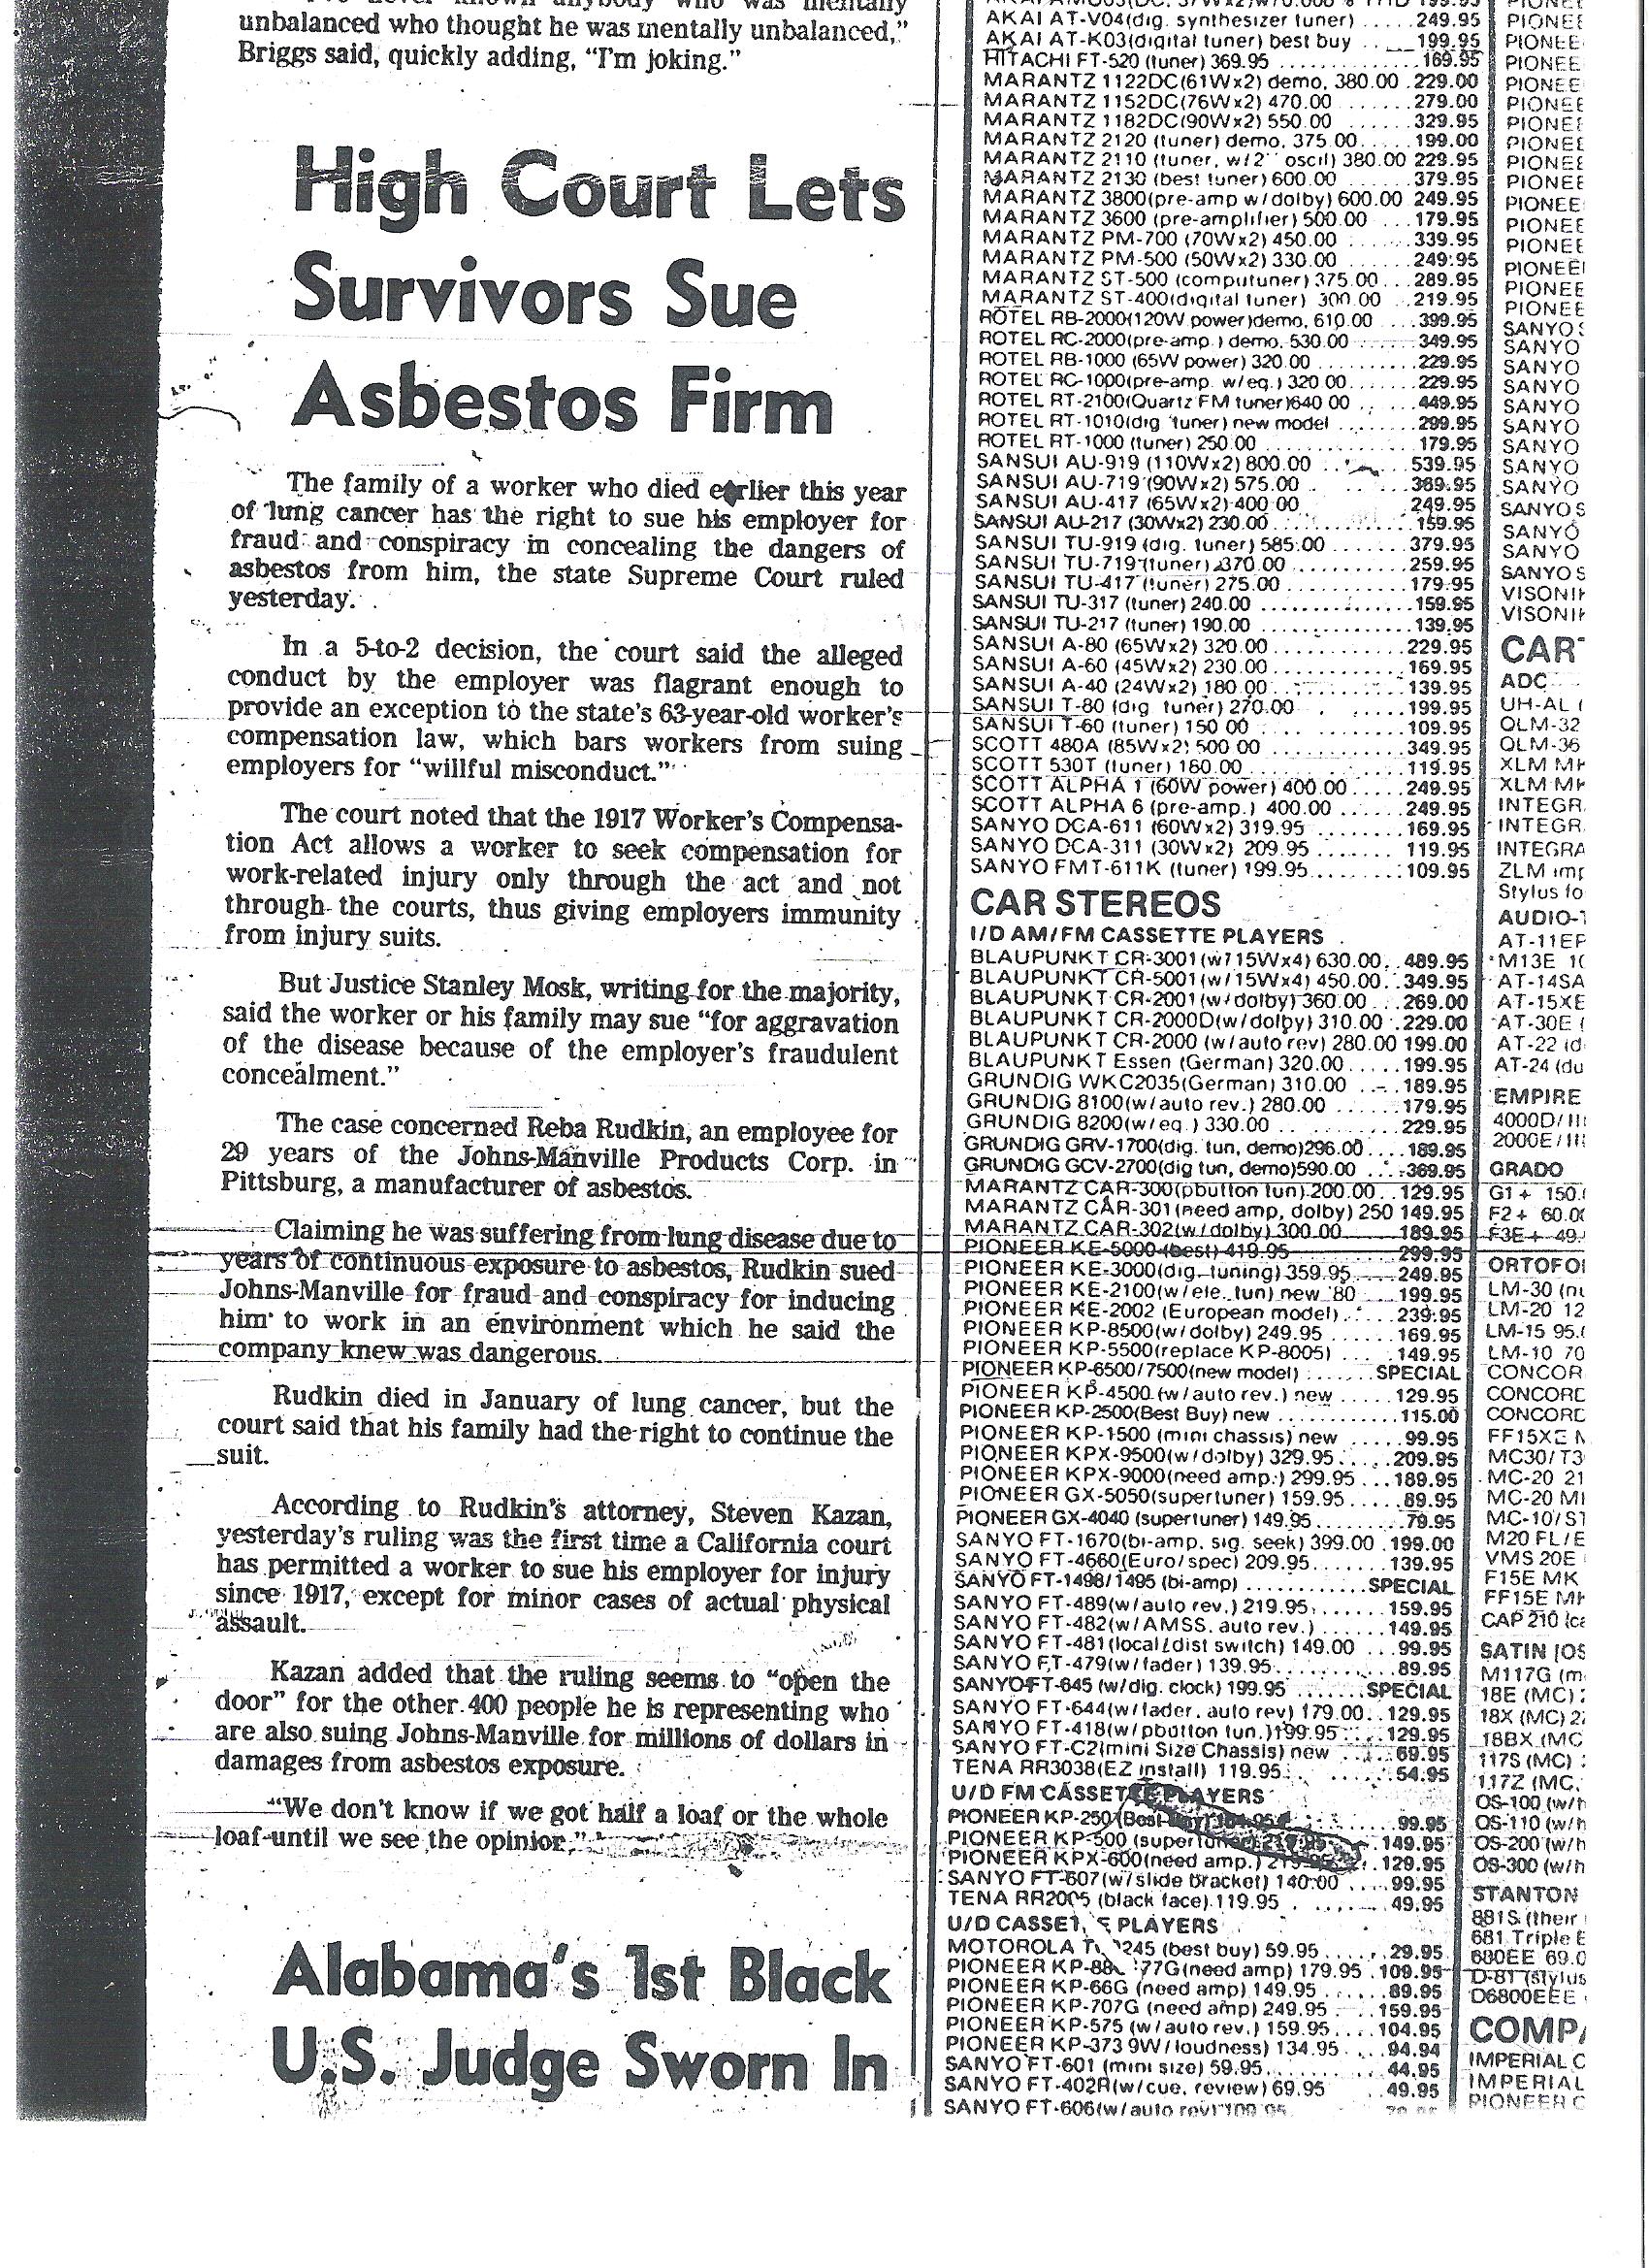 asbestos law